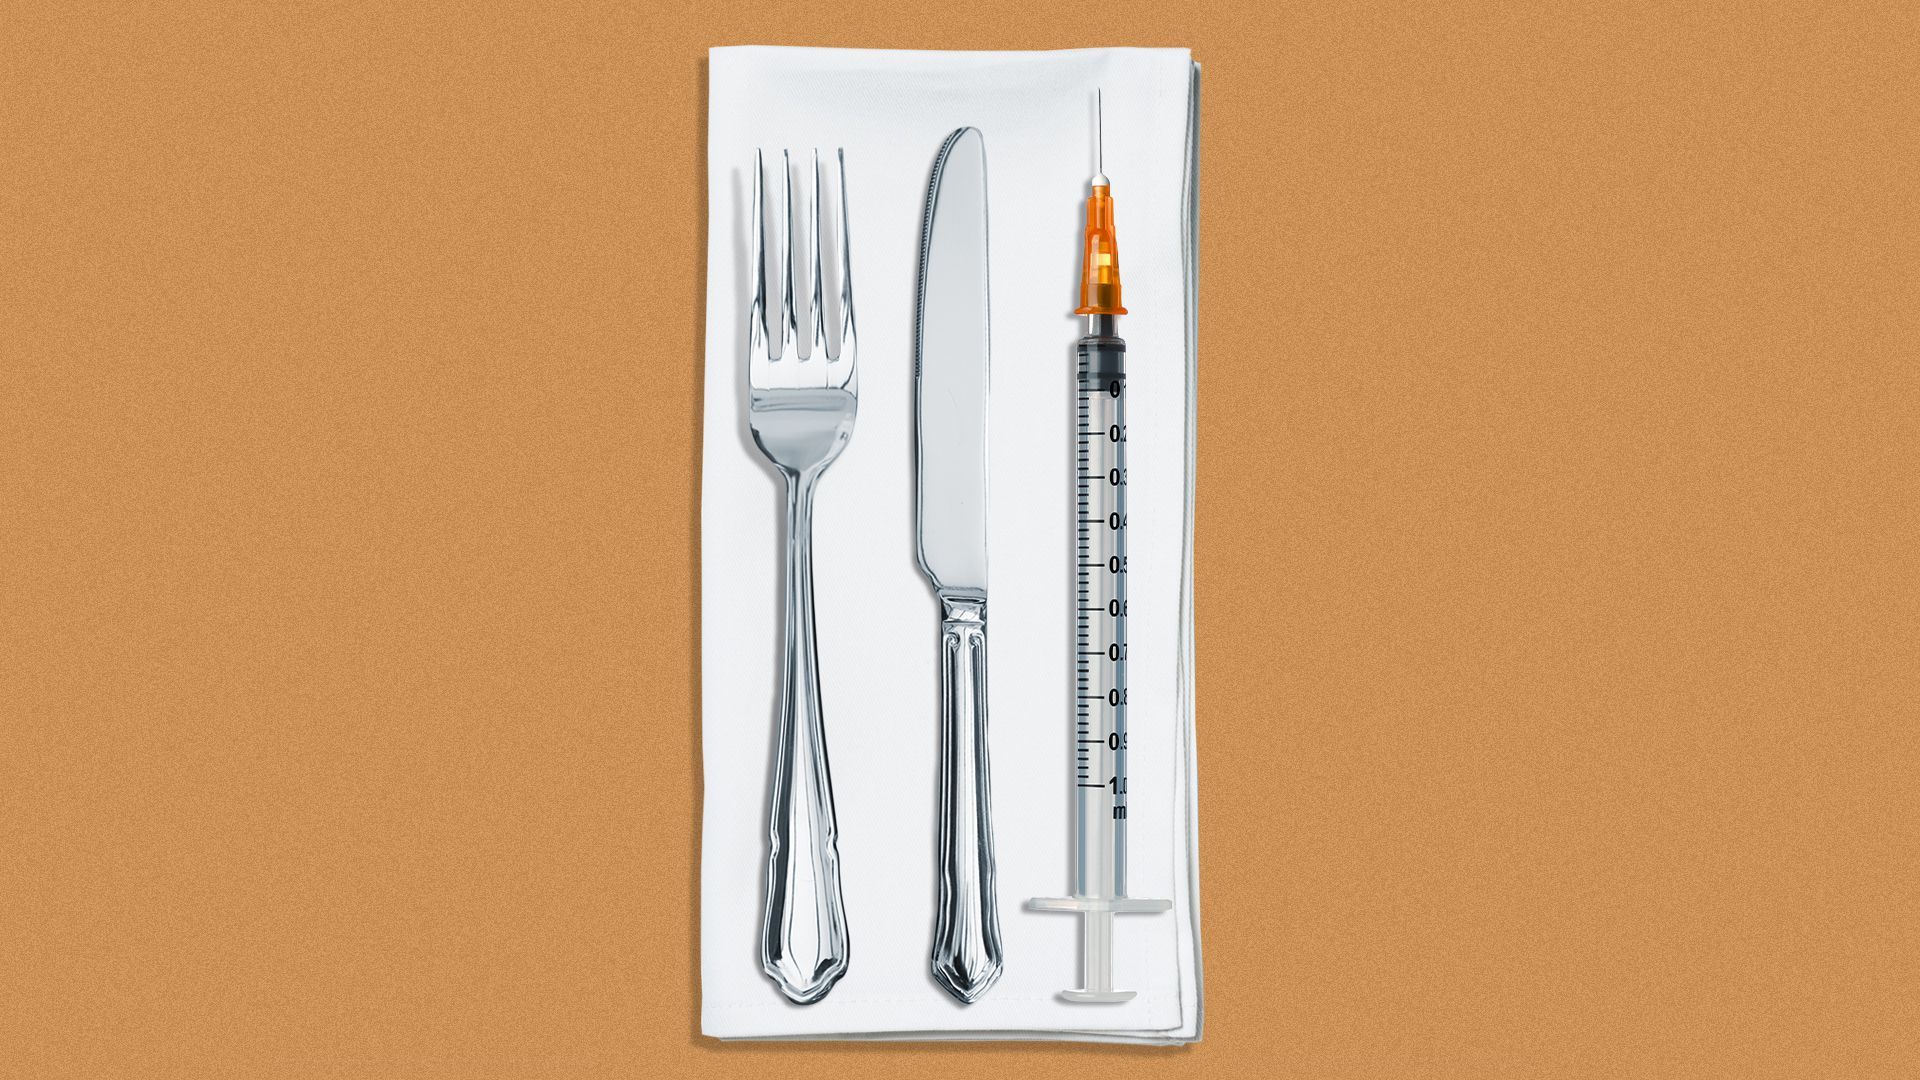 Illustration of a fork, knife and syringe on a napkin.